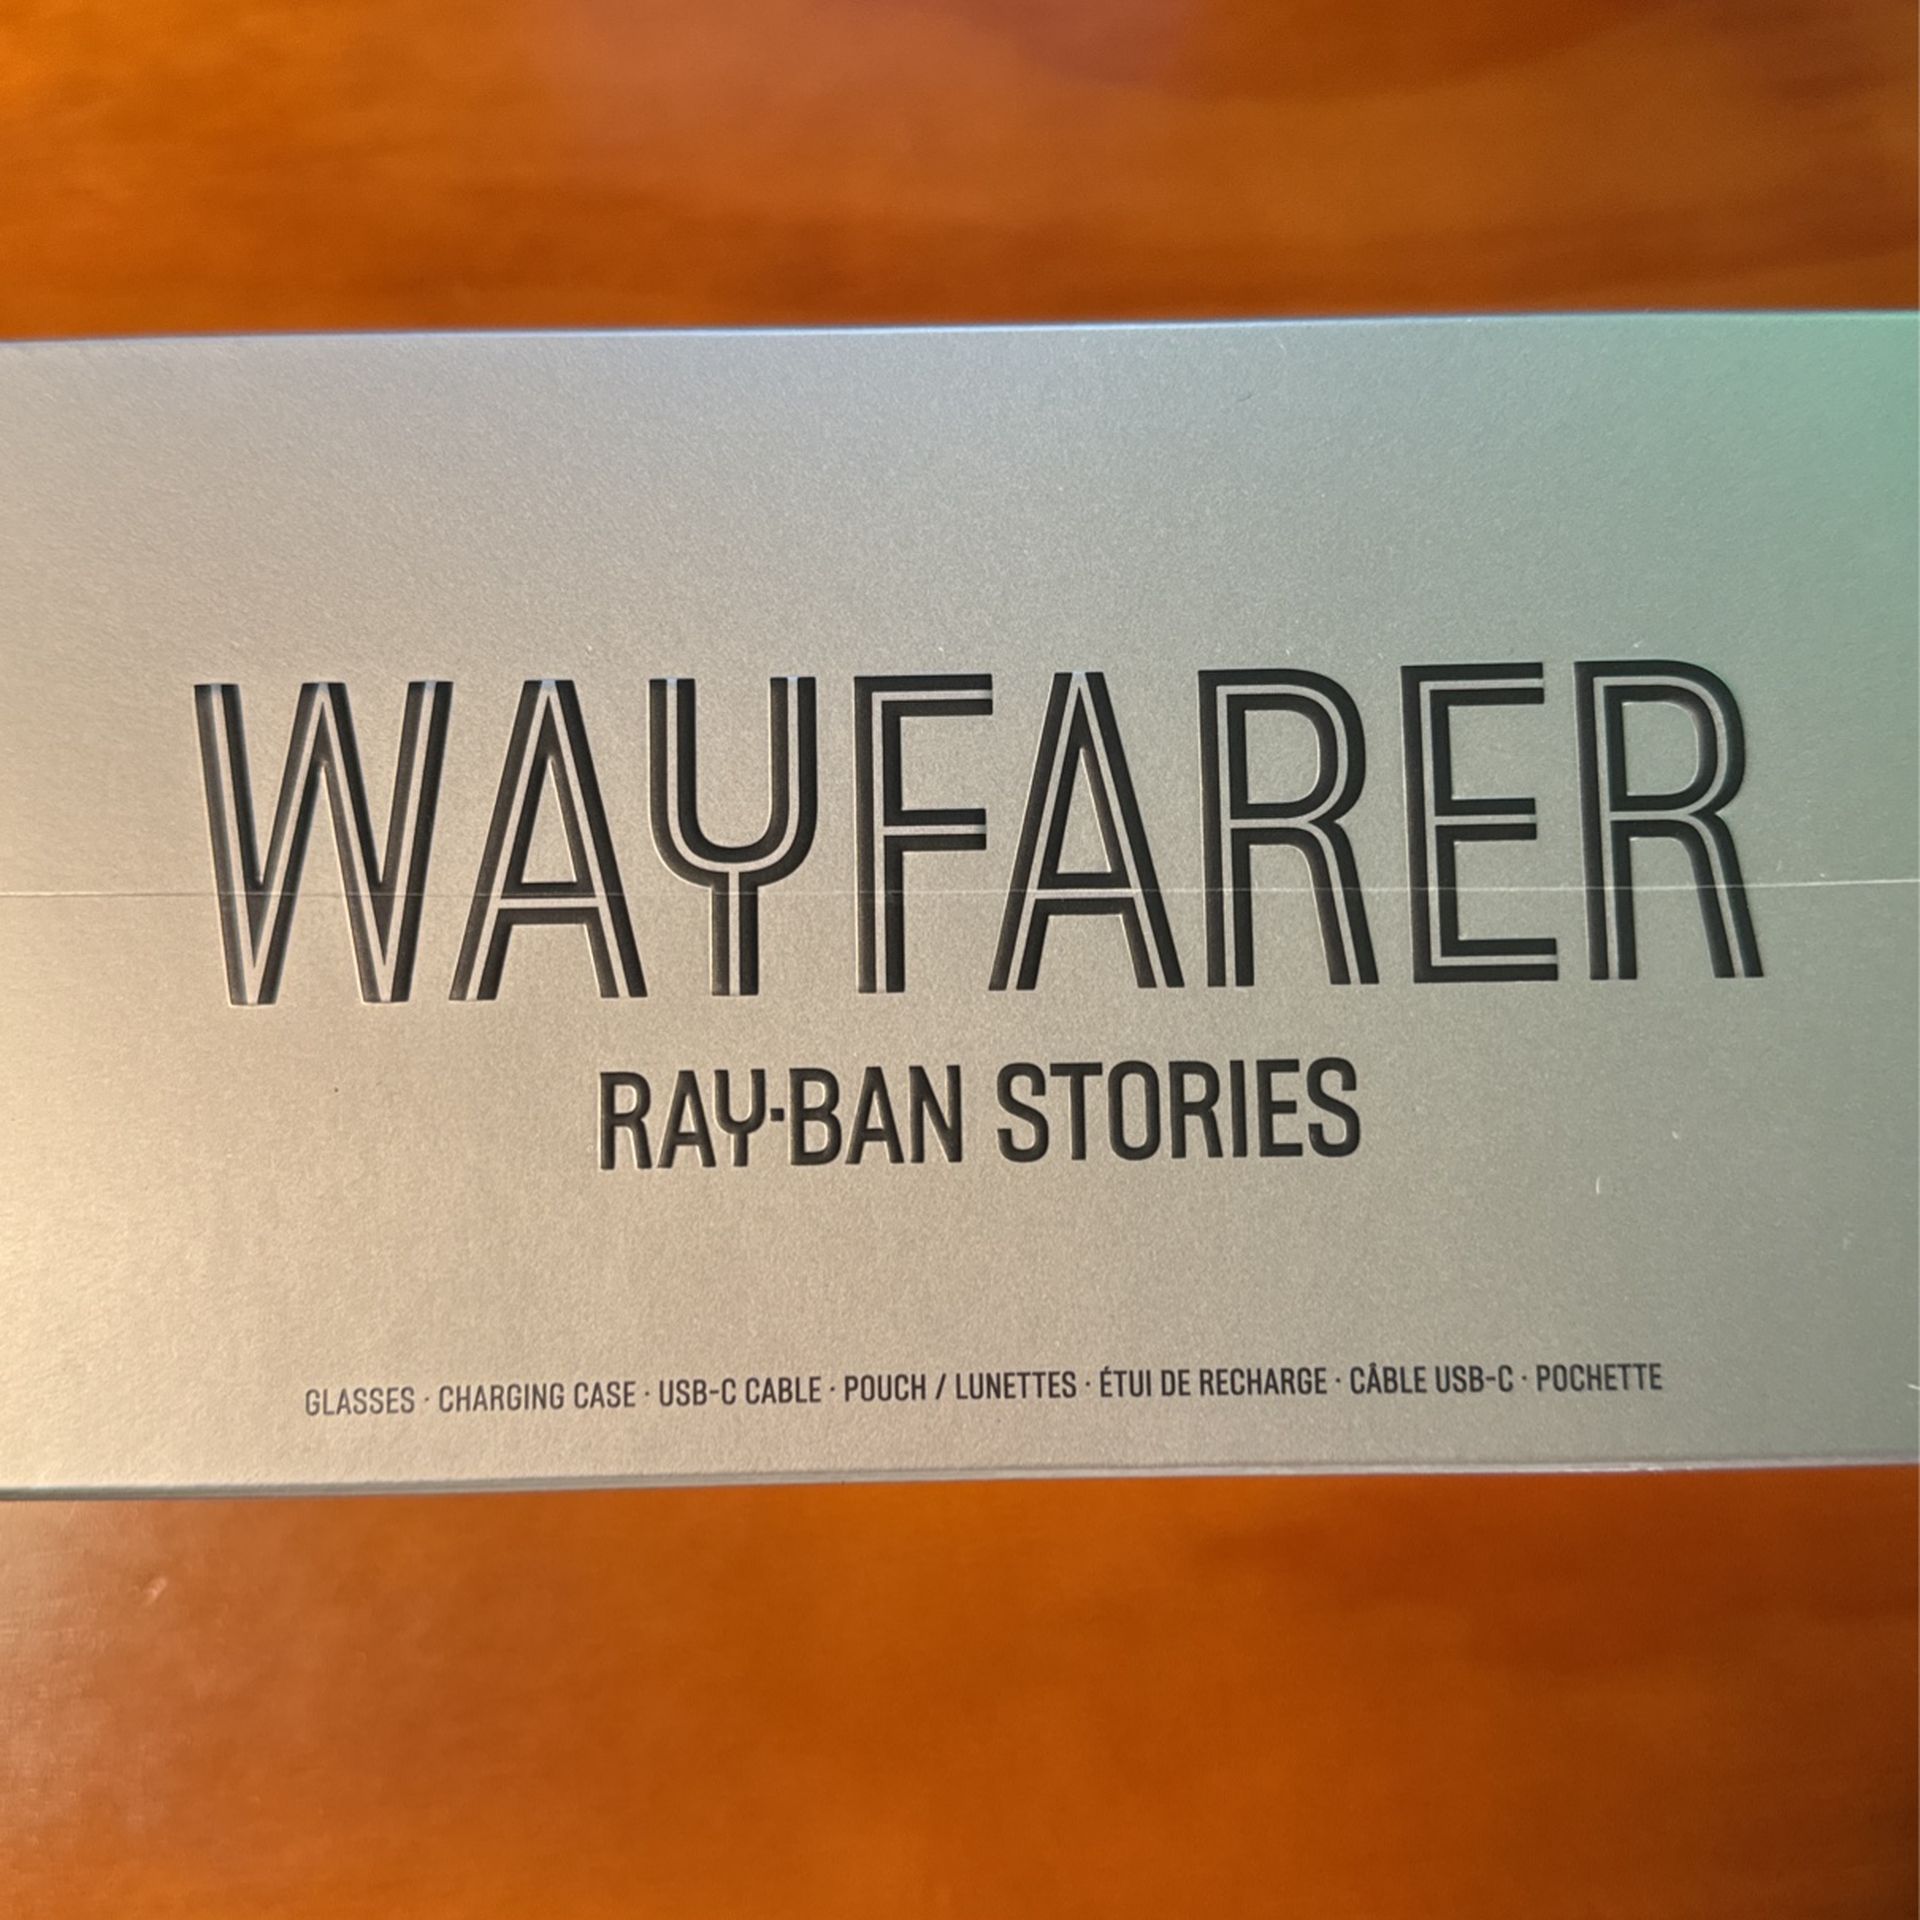 Ray-Ban stories Wayfarer